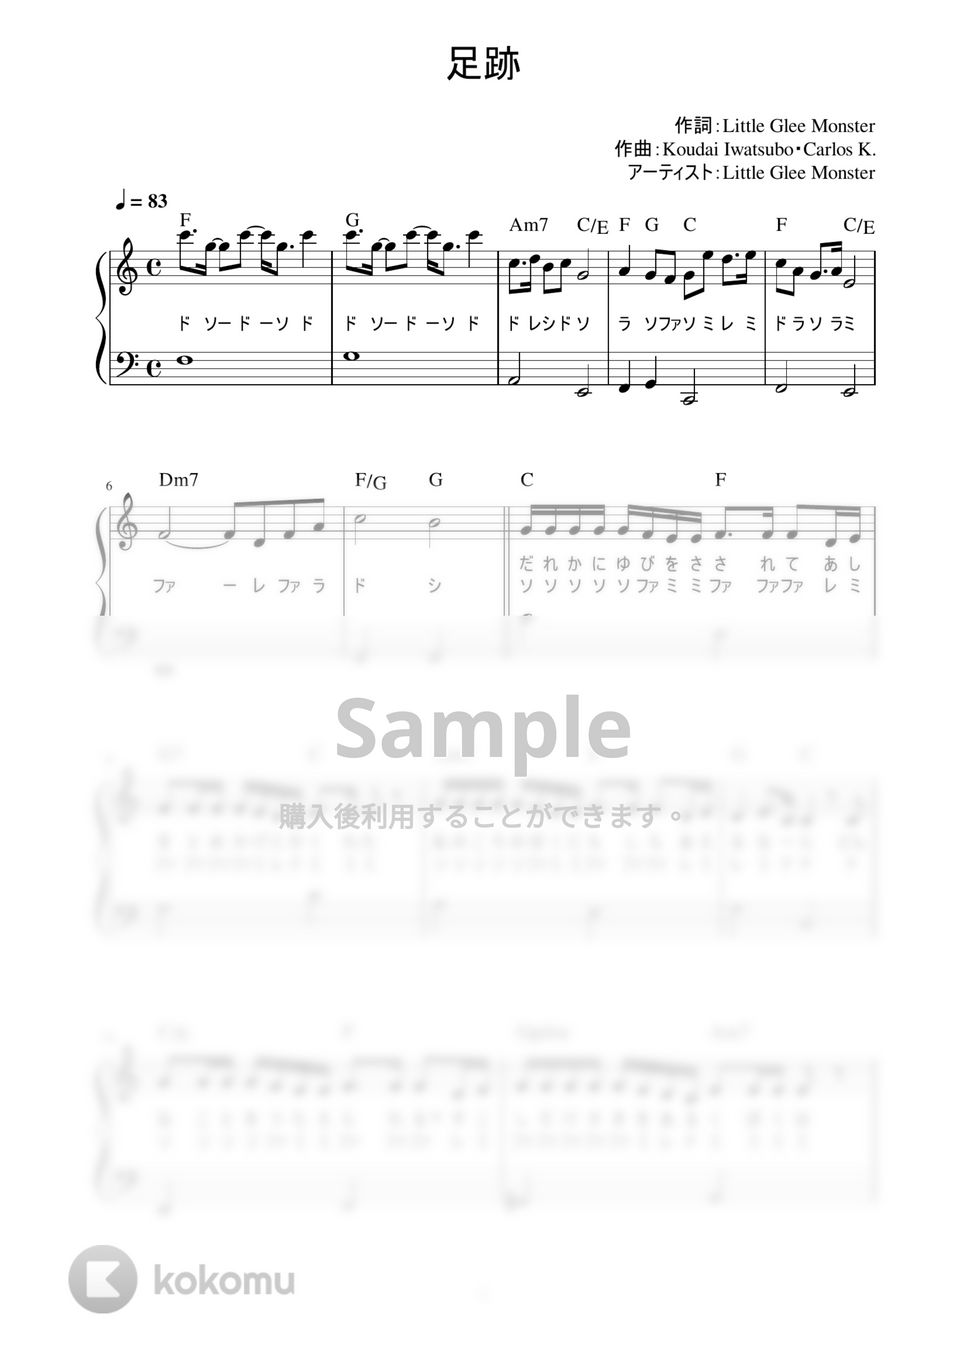 Little Glee Monster - 足跡 (かんたん / 歌詞付き / ドレミ付き / 初心者) by piano.tokyo